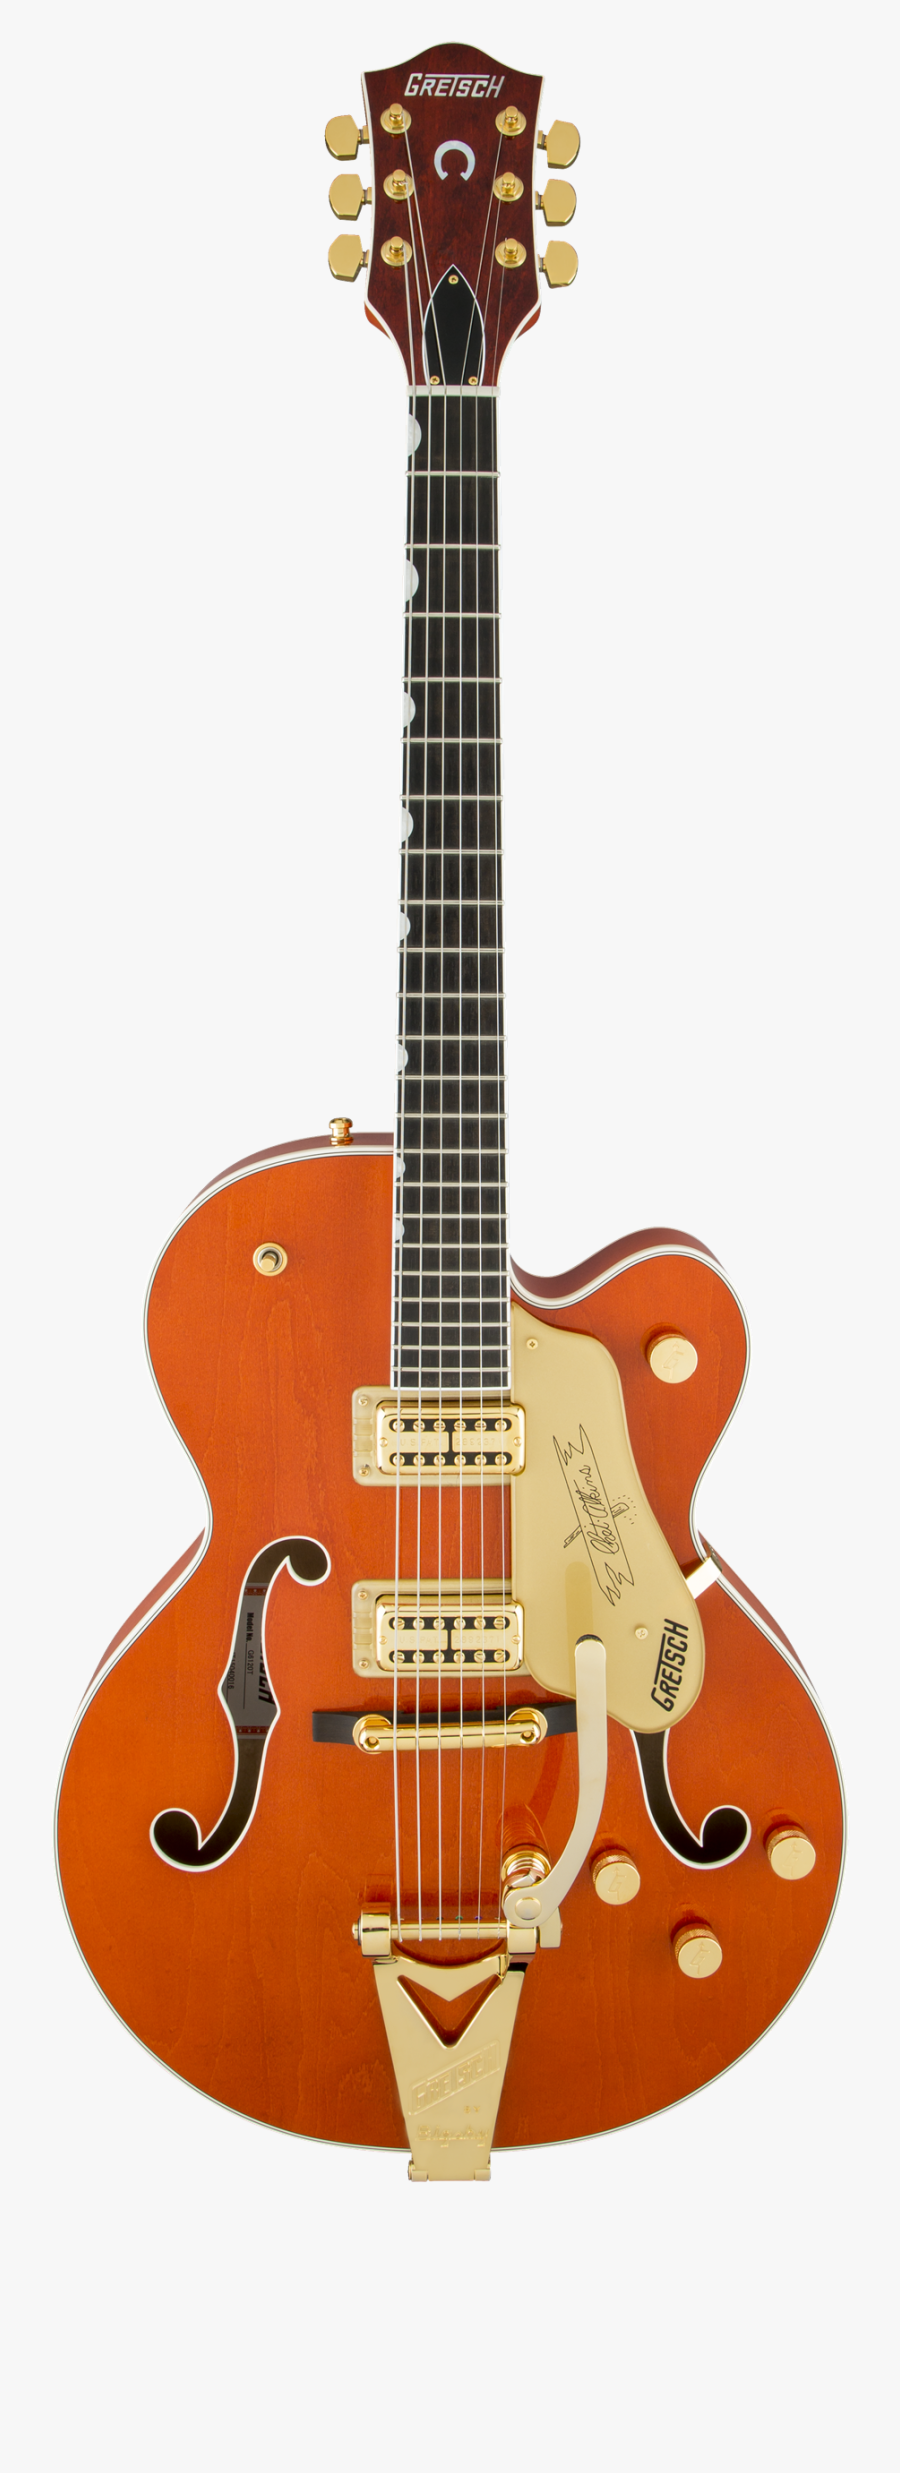 Gretsch Guitar Tennessee Rose, Transparent Clipart